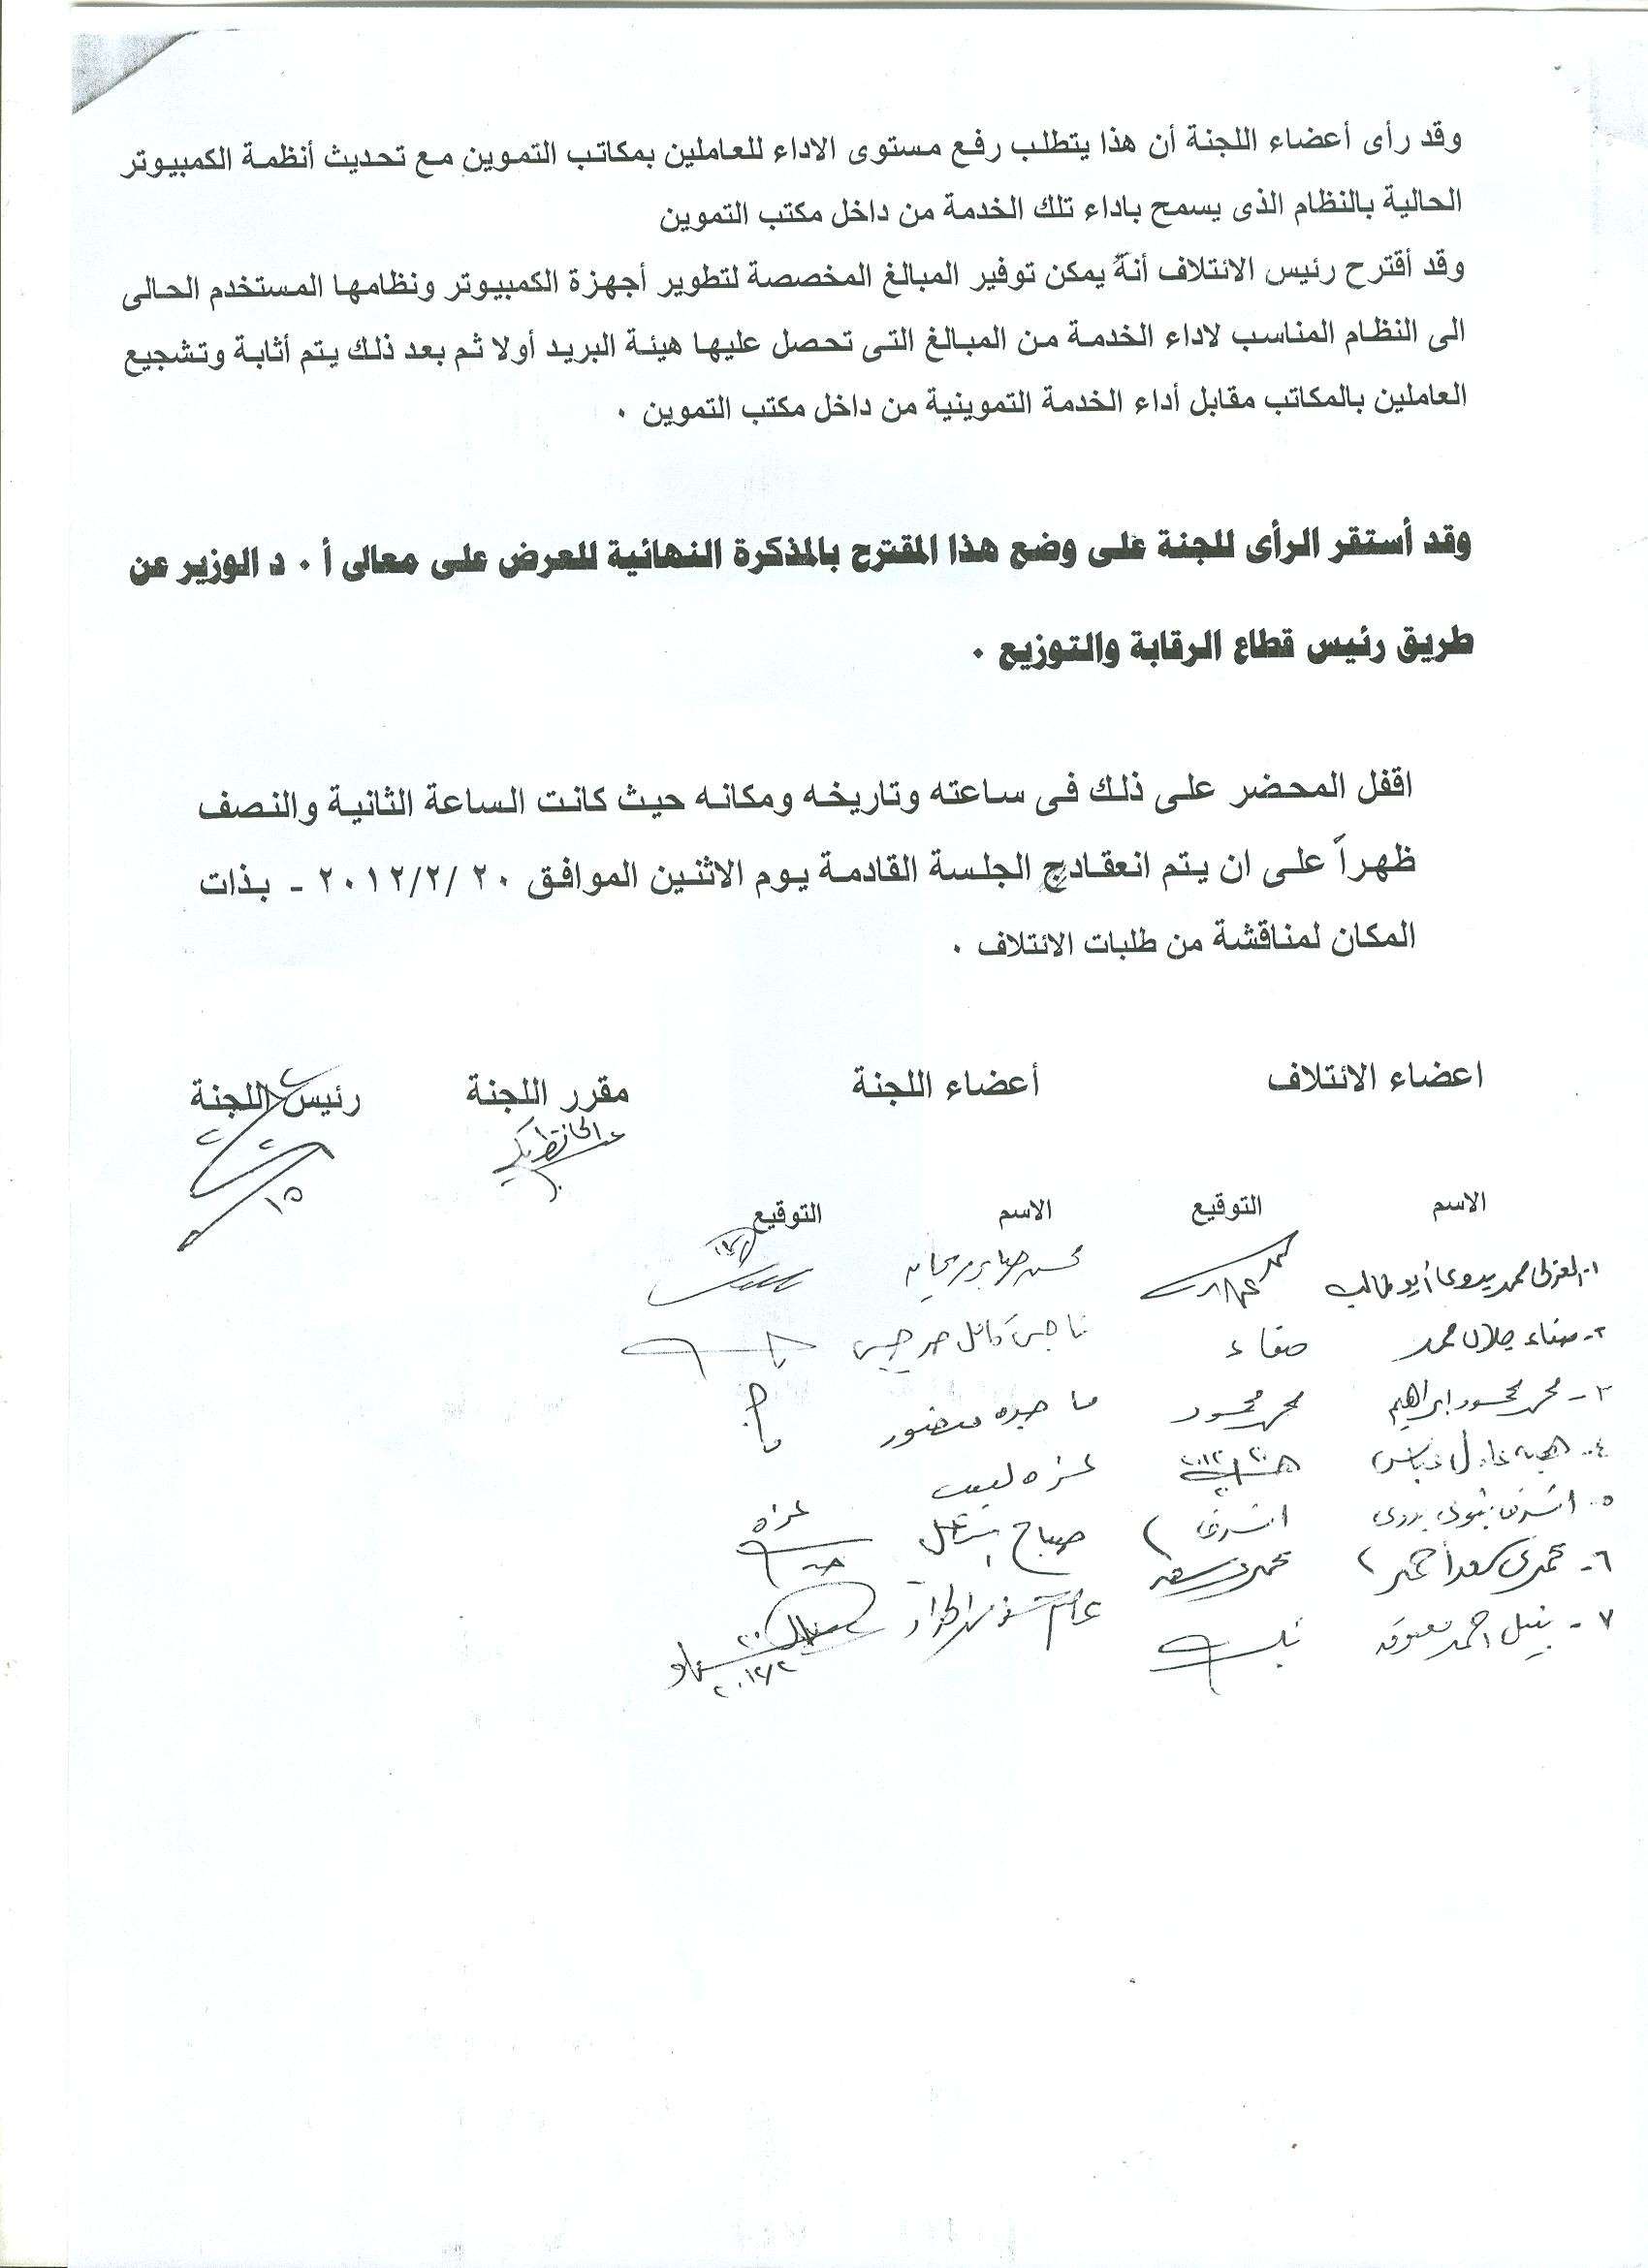 أعمال لجنة الإئتلاف العام للعاملين بتموين مصر بالوزاره خلال شهر فبراير 2012 - صفحة 2 15-410